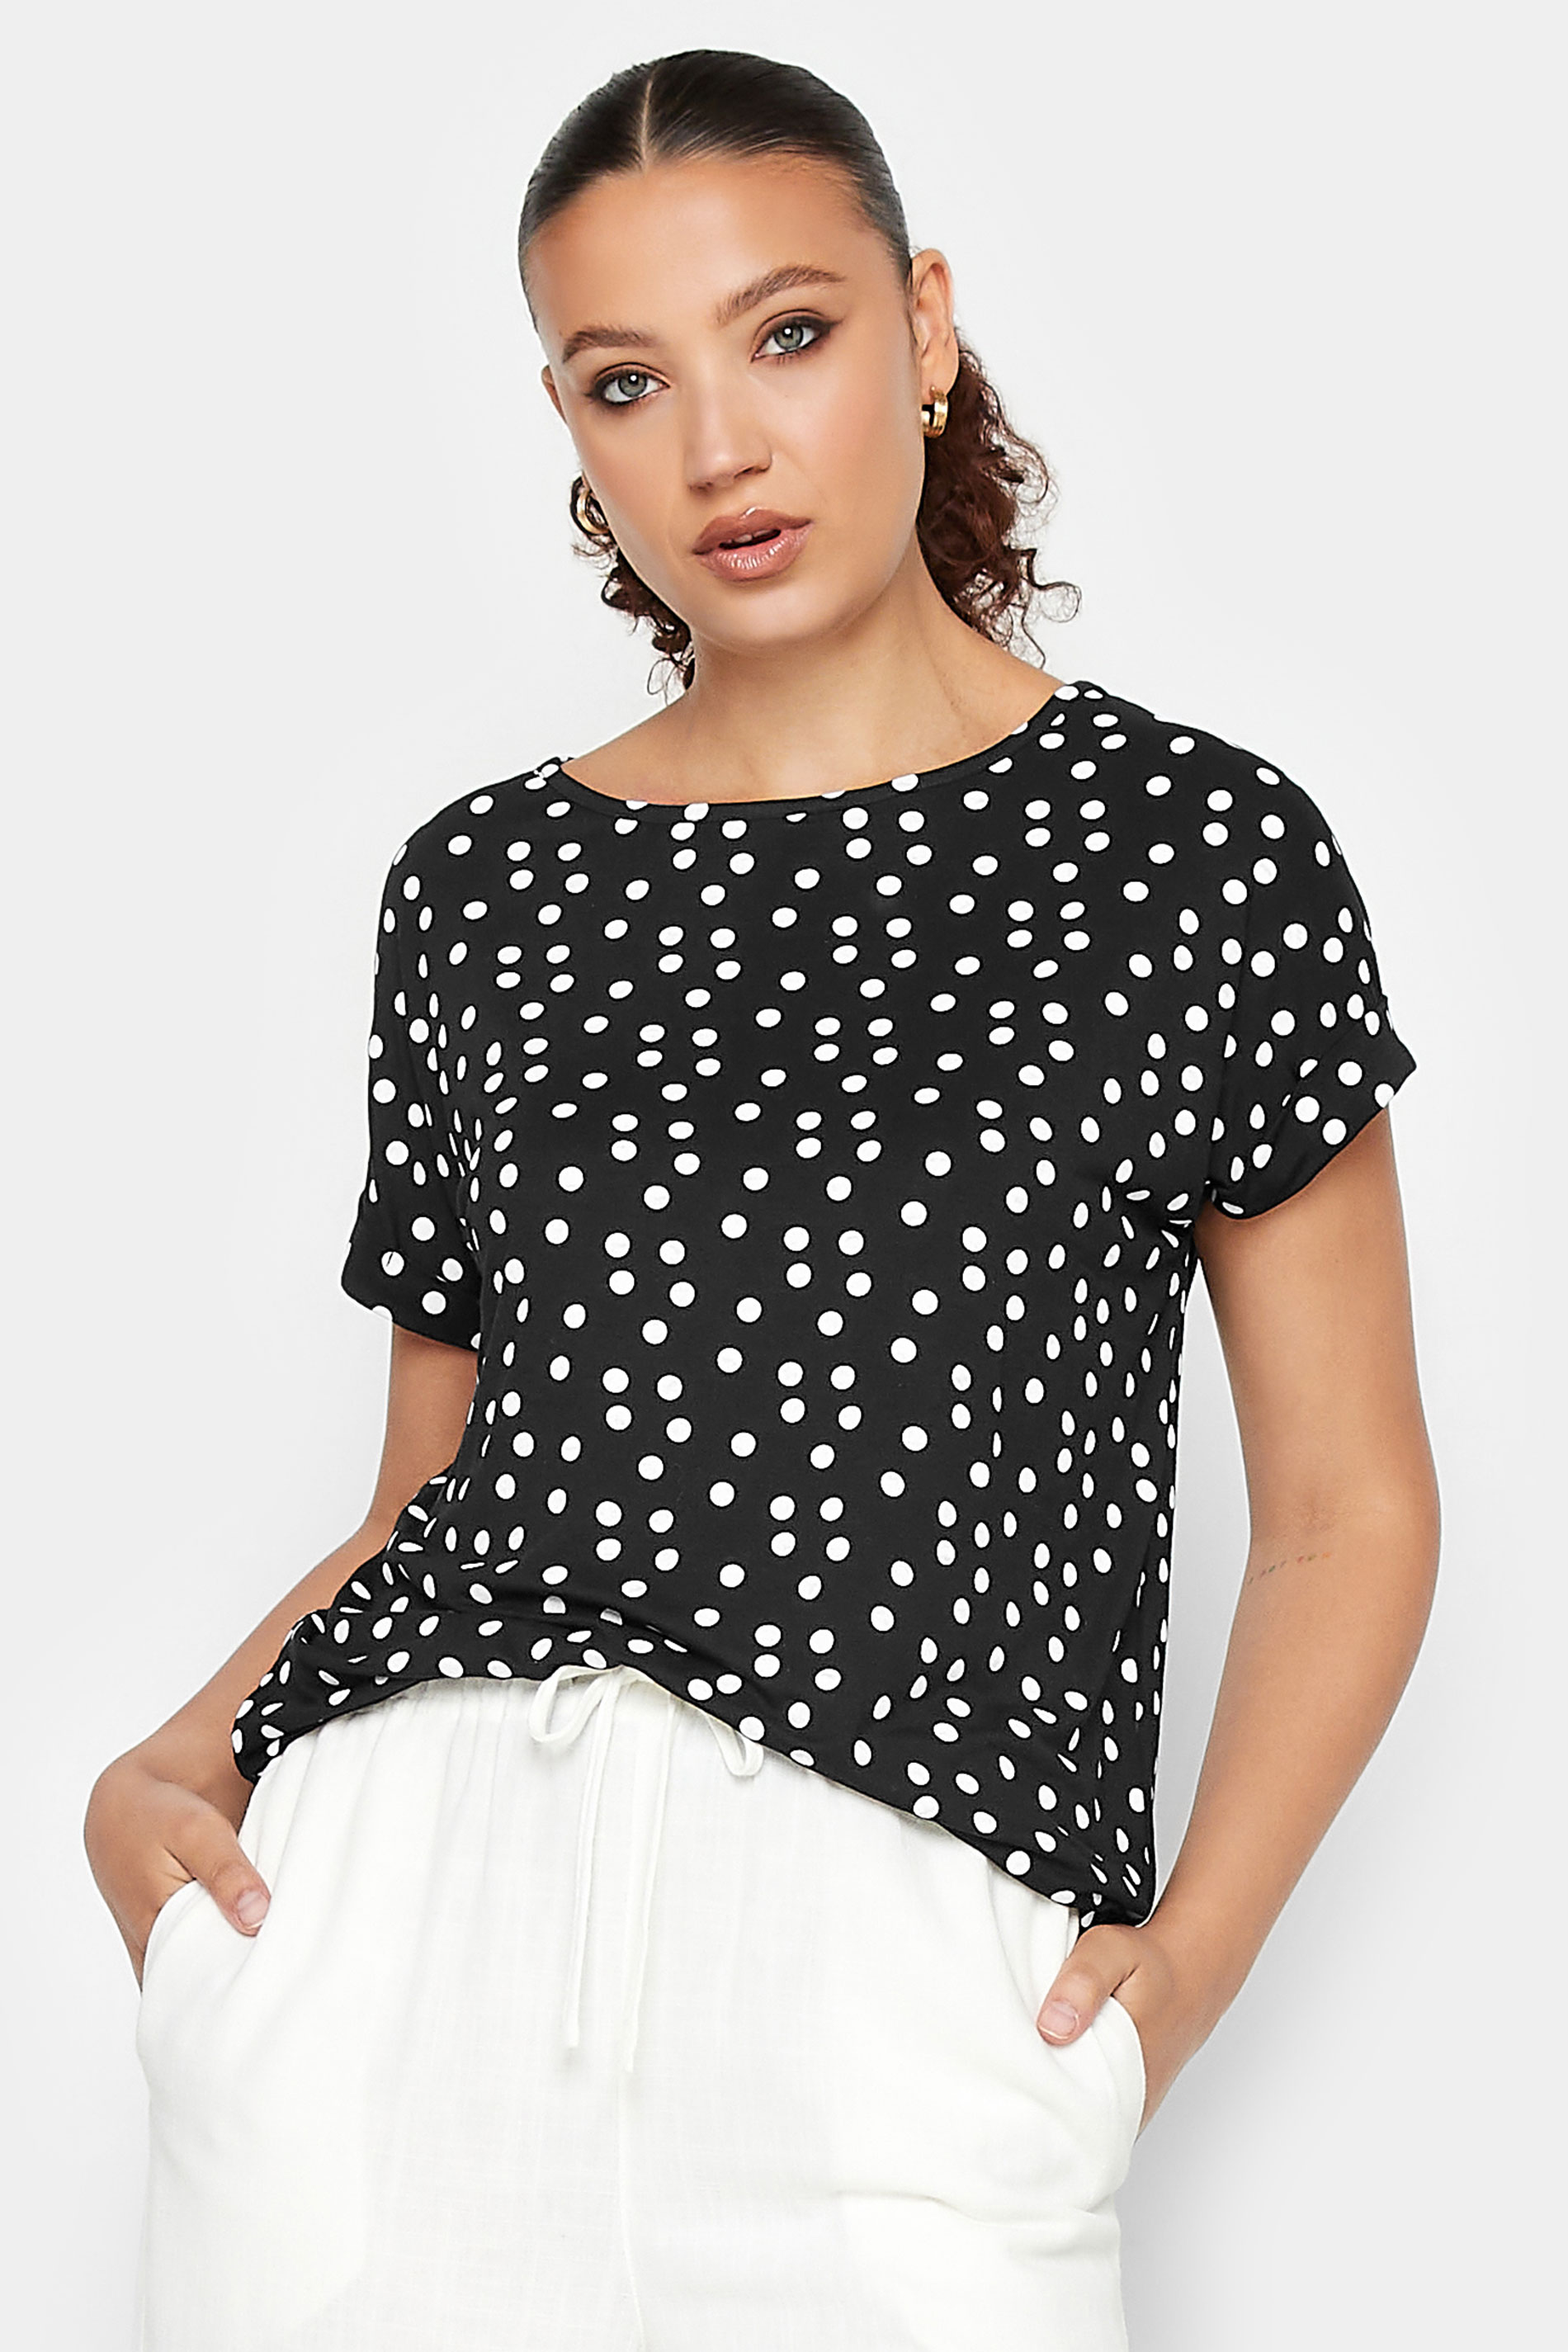 LTS Tall Black Polka Dot Print T-Shirt | Long Tall Sally 1